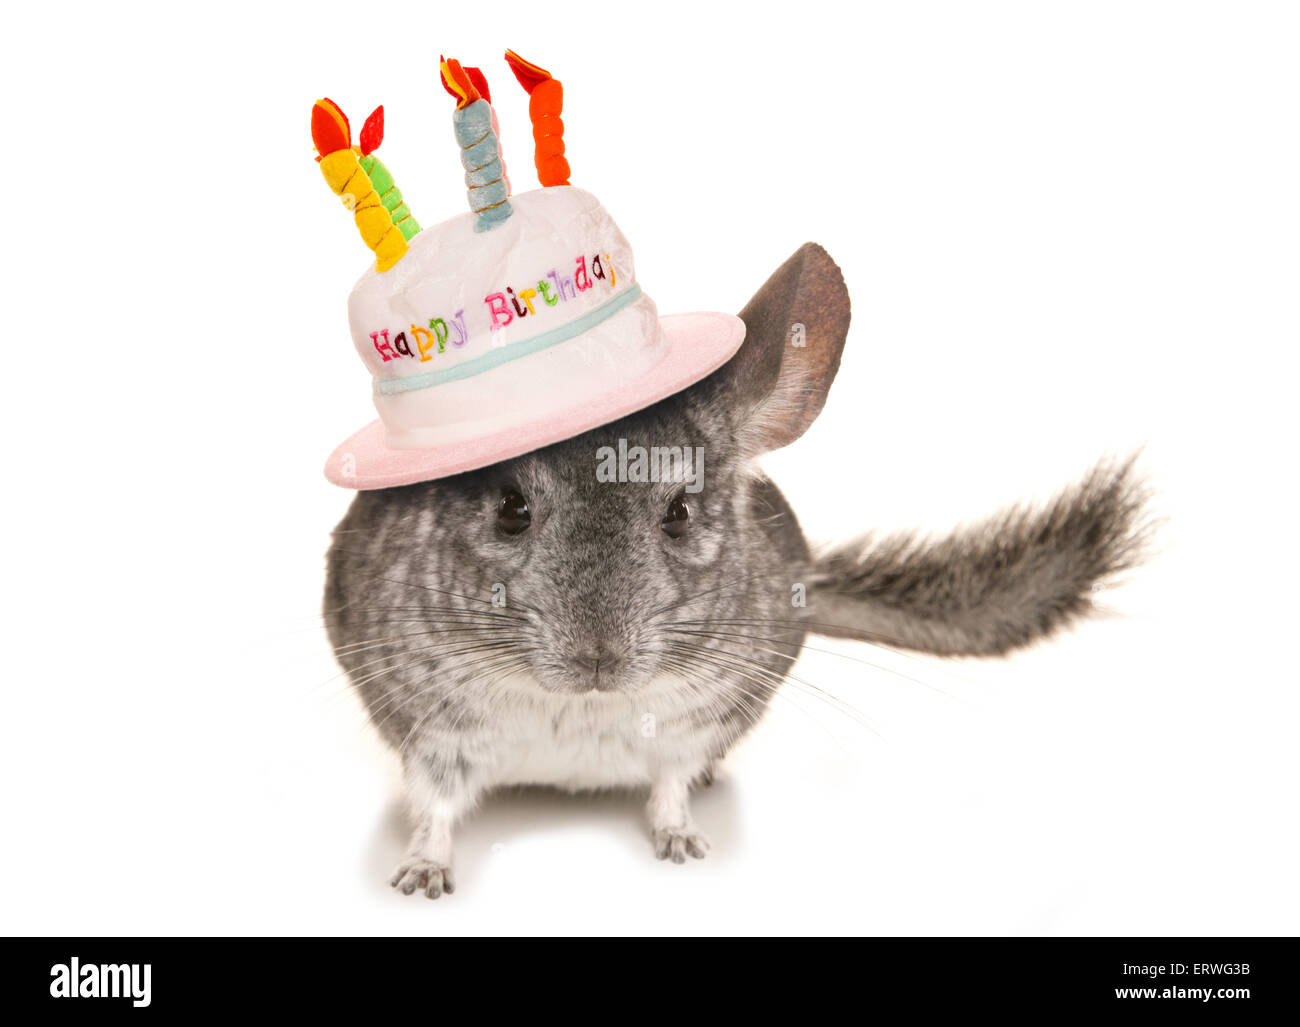 День шиншиллы. Шиншилла с днем рождения. Шиншилла в шляпке. С днем рождения шиншилла открытка. Шиншилла в праздничном колпачке.